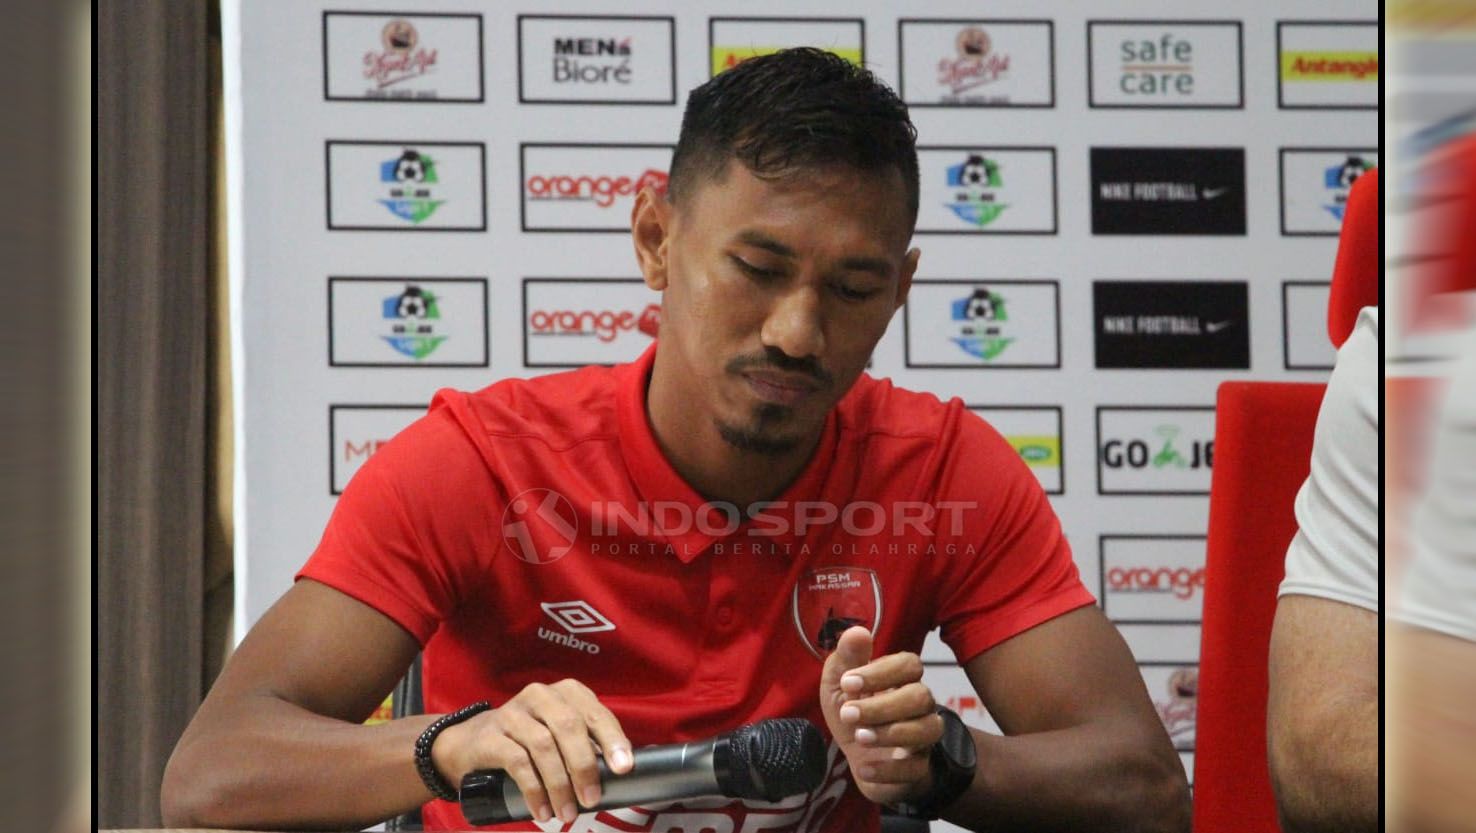 Bek kanan milik klub PSM Makassar, Zulkifli Syukur, menyebut sikap para pemain sangat menentukan prestasi klubnya dalam lanjutan Liga 1 2020 pada Oktober mendatang. Copyright: © Fitra Herdian/Indosport.com